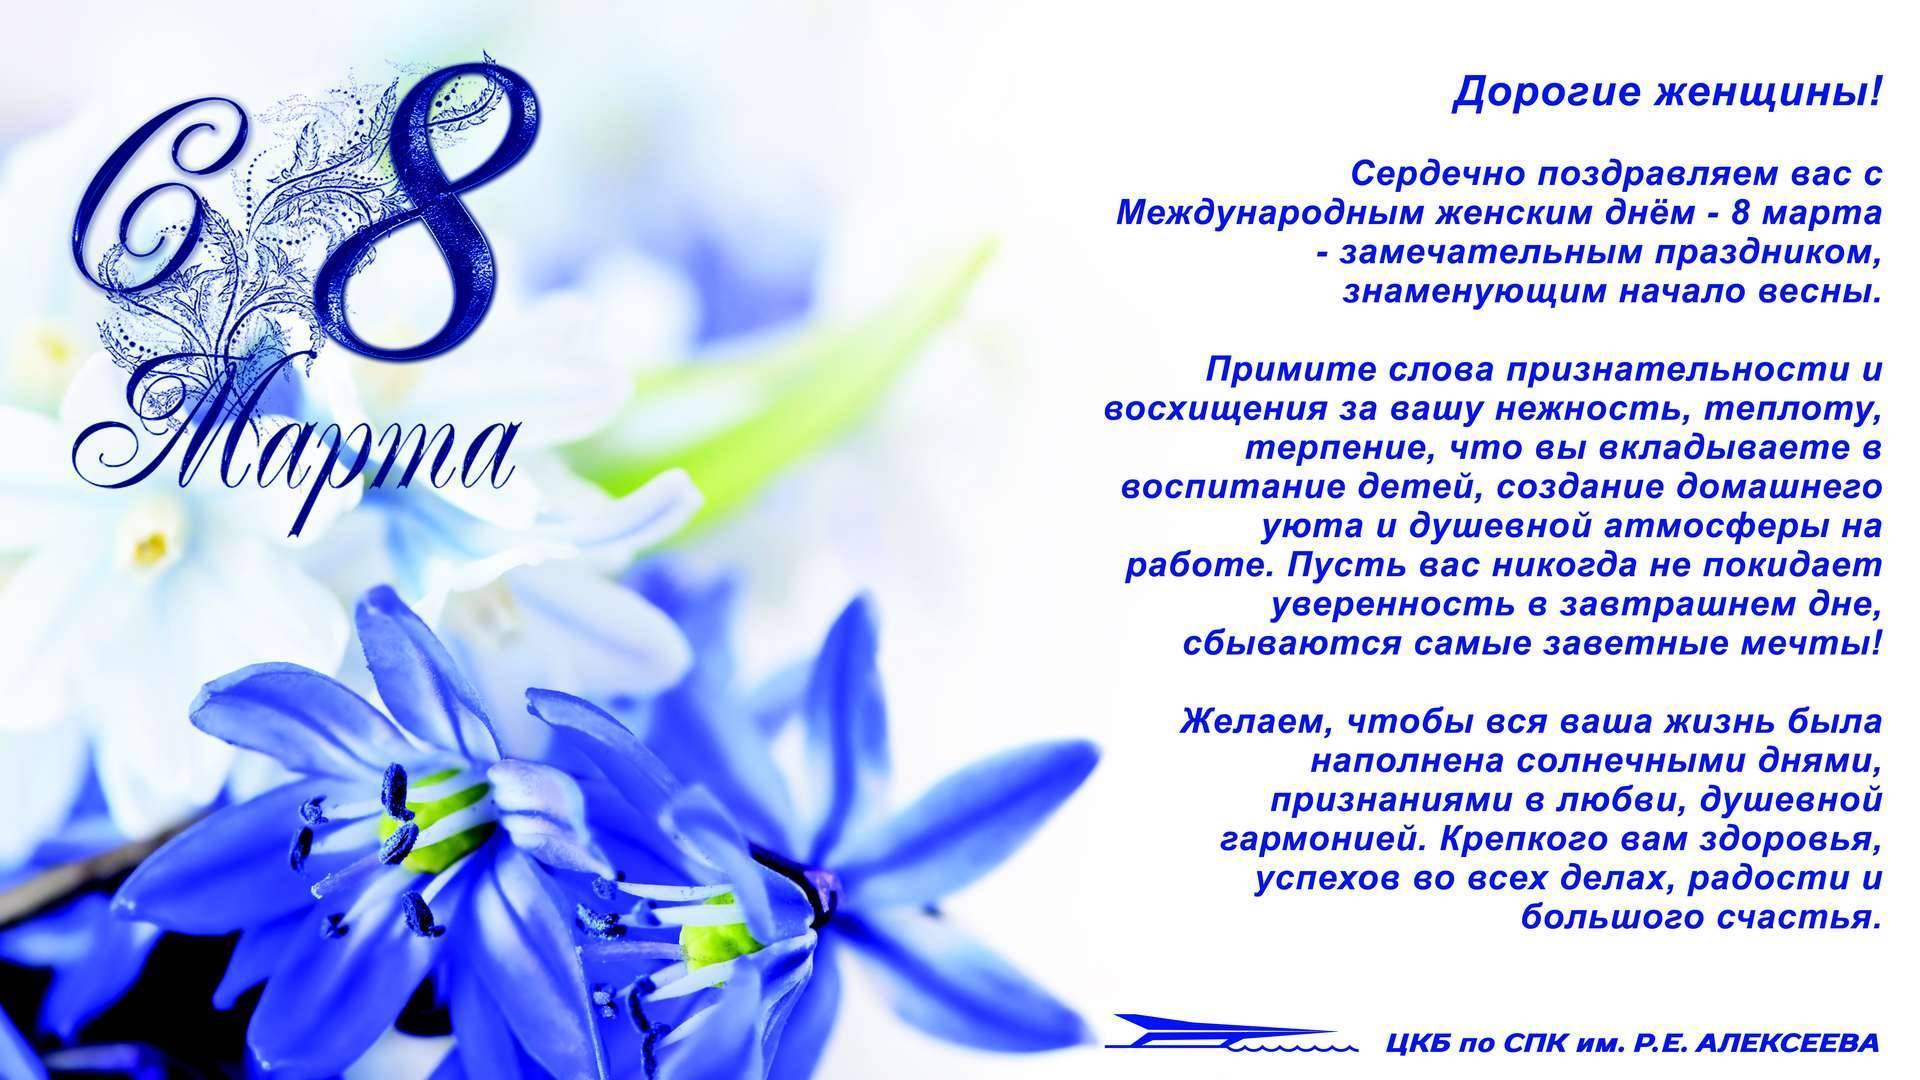 Новый год 8 марта. почему в россии в этот день принято дарить подарки,а не бастовать за равную оплату труда